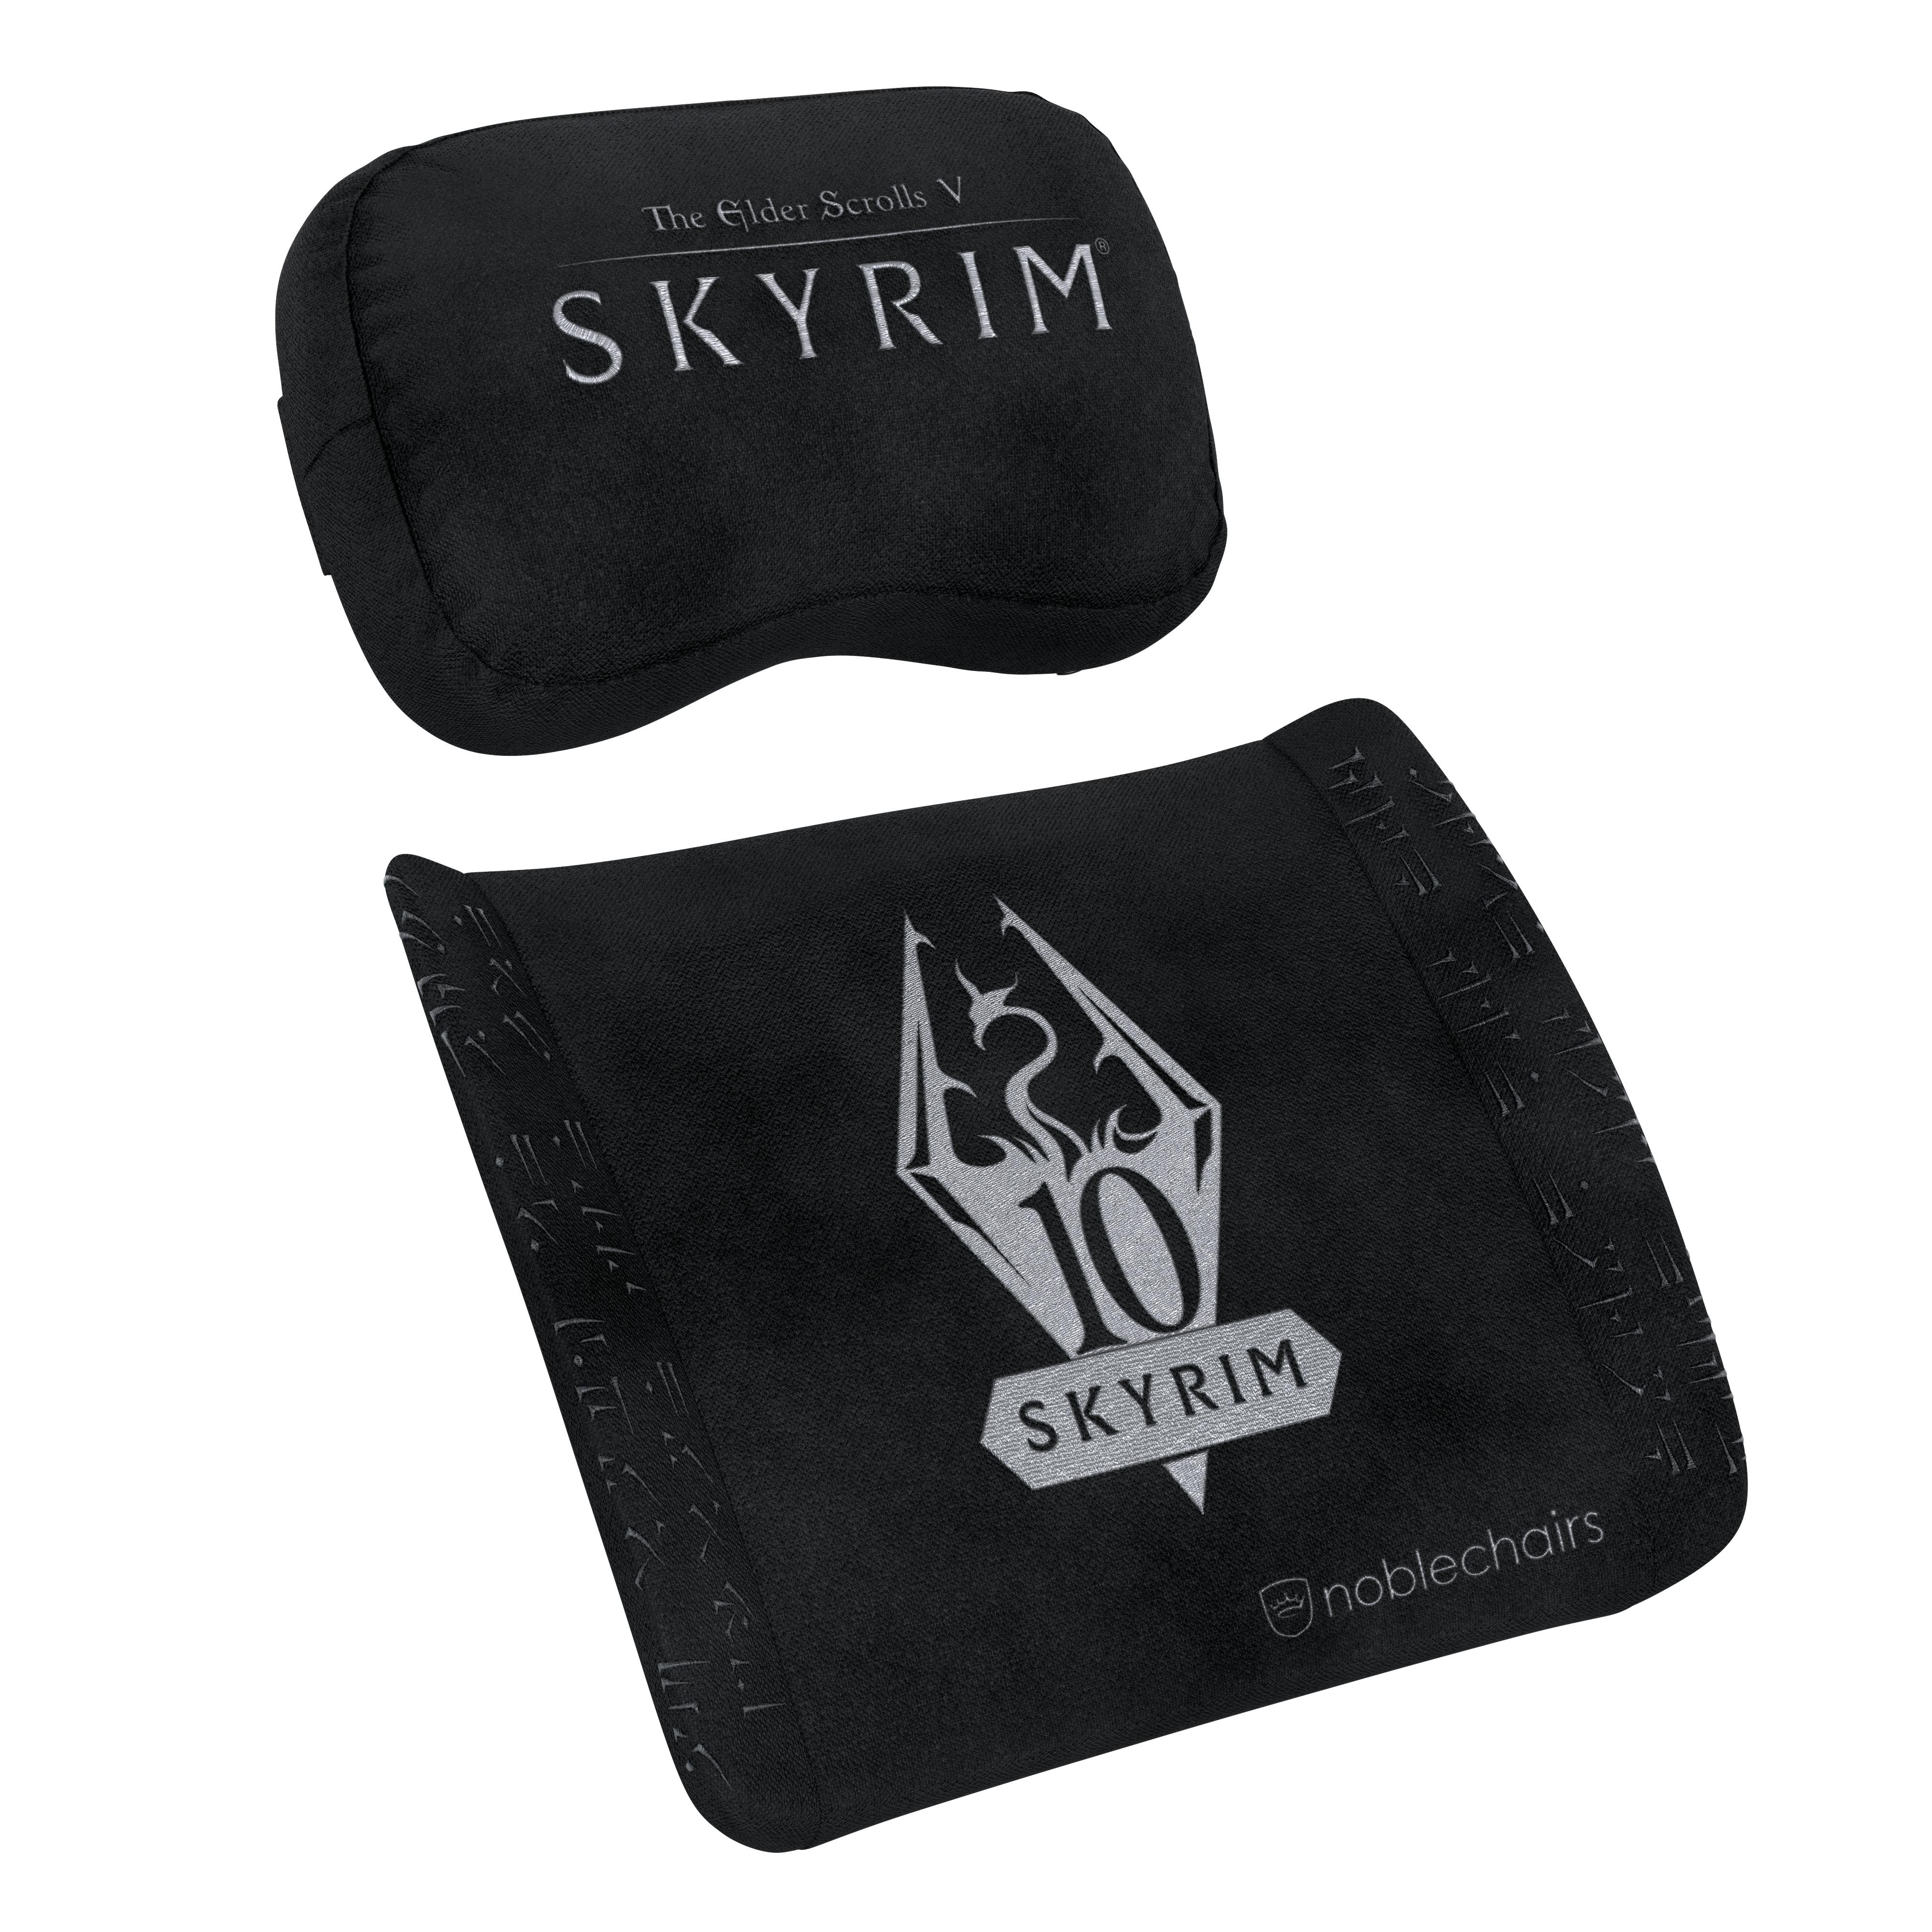  - Cojín de espuma de memoria Set de almohadas de la edición SKYRIM